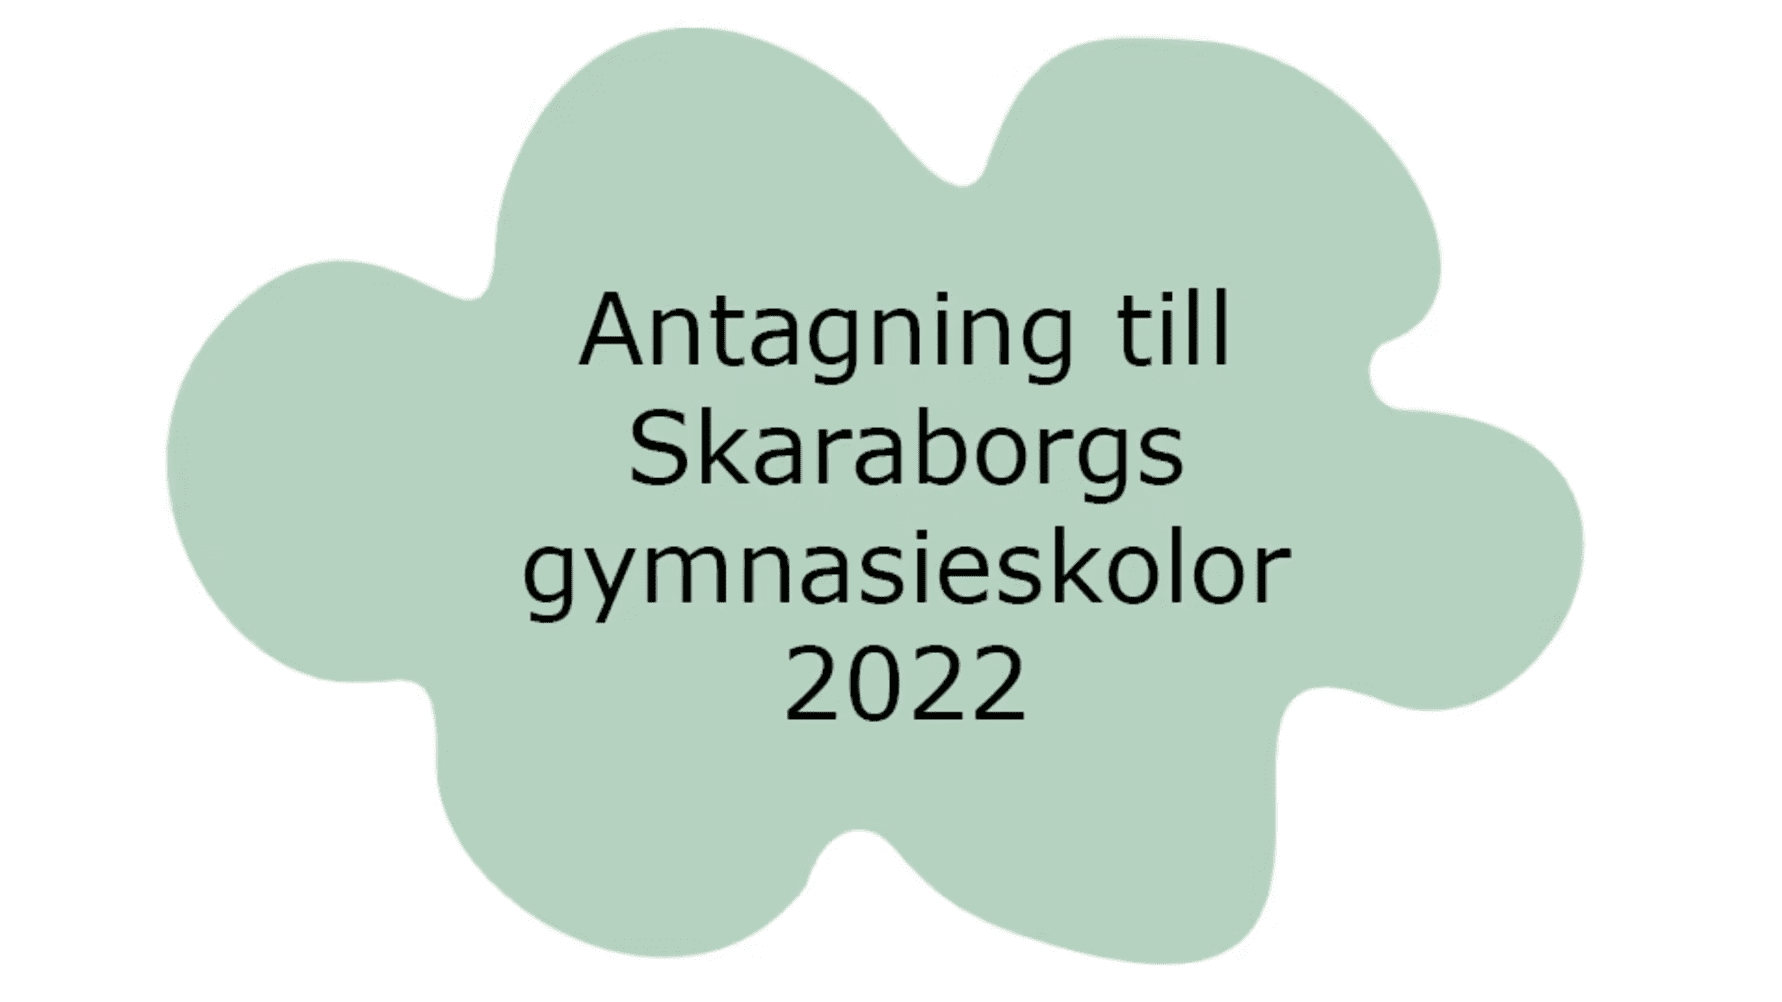 Antagning till Skaraborgs gymnasieskolor 2022